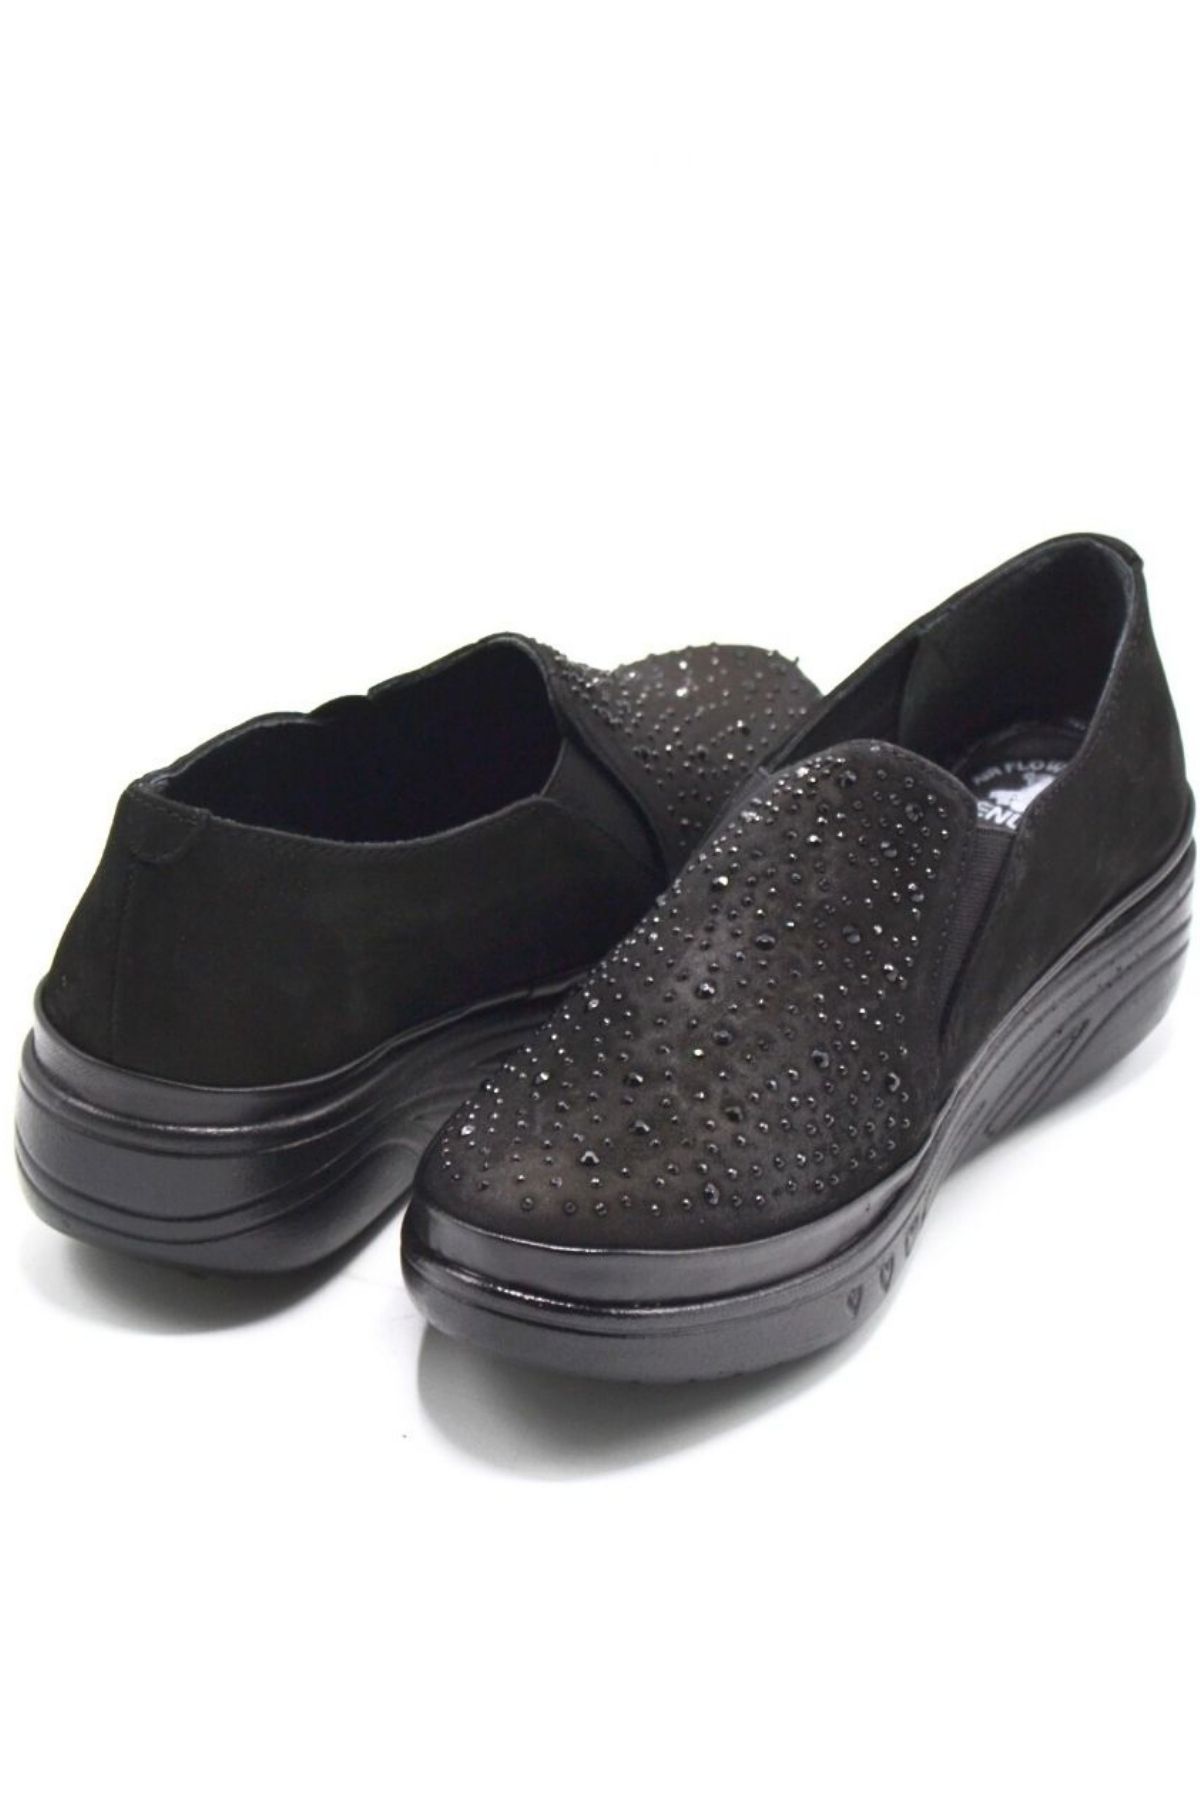 Kadın Airflow Deri Ayakkabı Siyah 1820504K